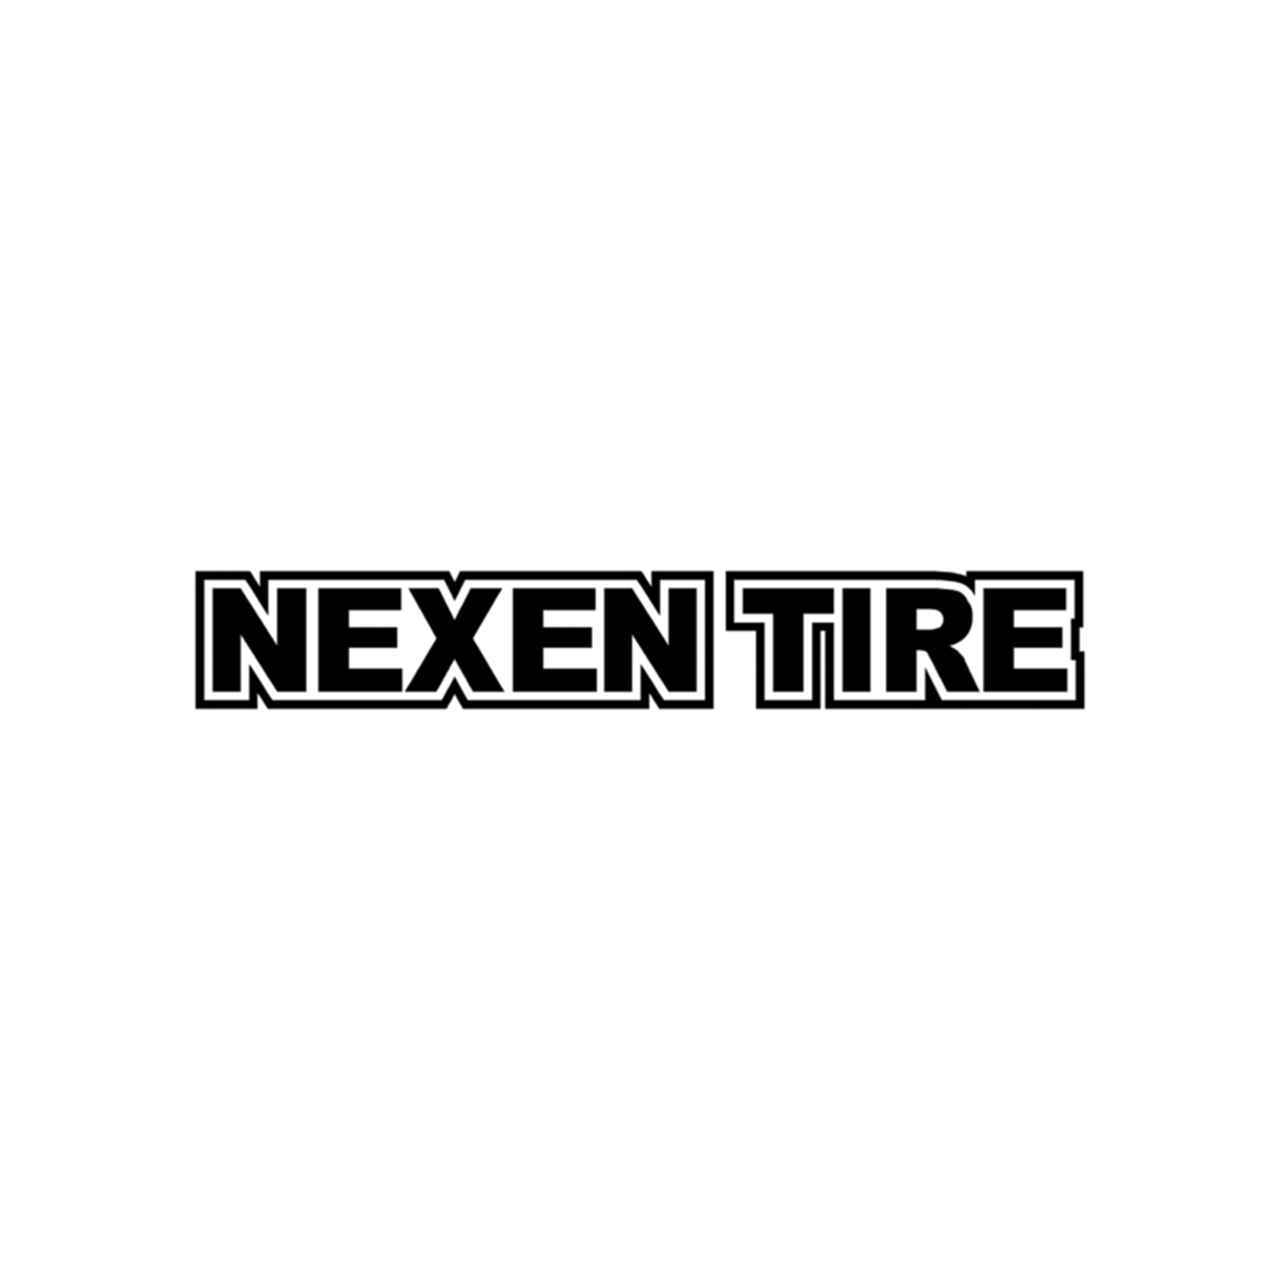 Nexen Logo - Nexen Tire Contour Plein Vinyl Decal